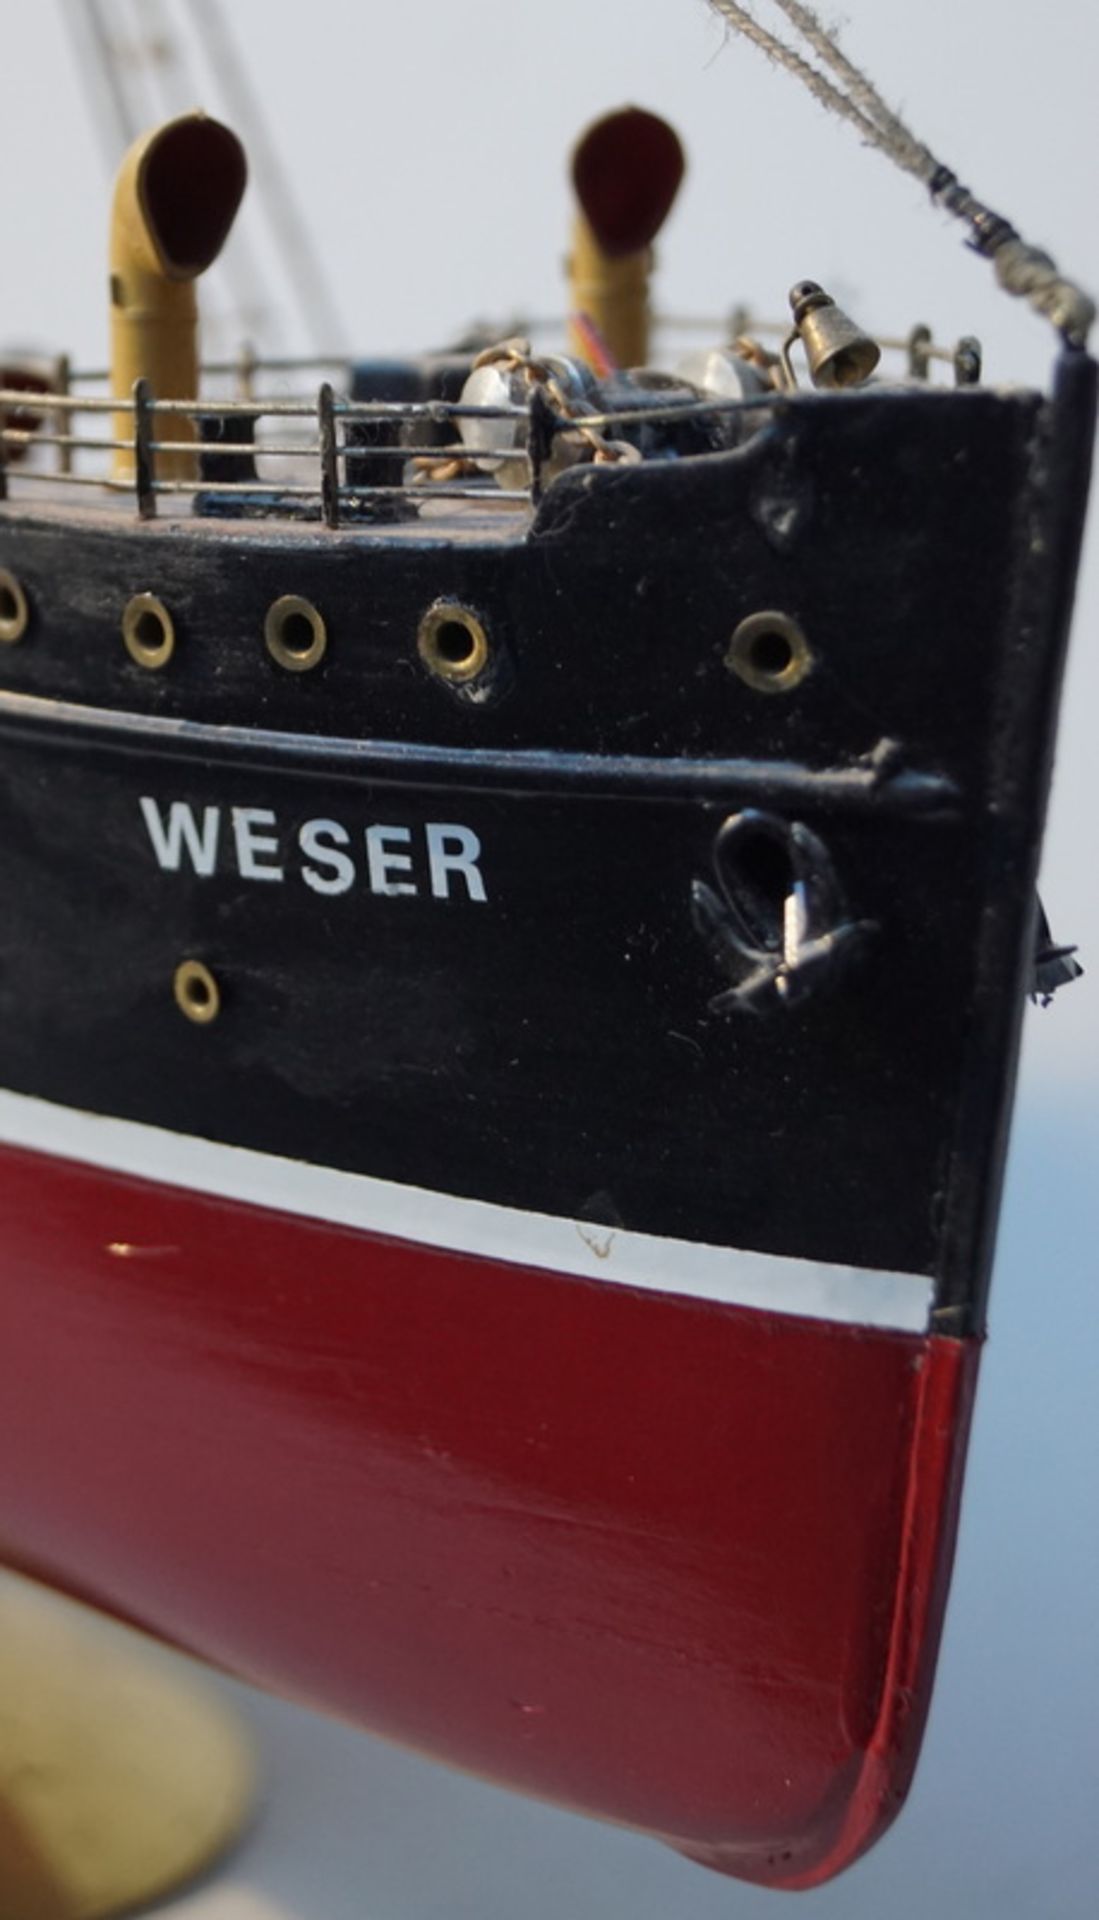 Schiffsmodell "Weser"Vollholzmodell, Aufbauten teilweise aus Kunststoff, nicht elektrifizierbar, - Bild 3 aus 3